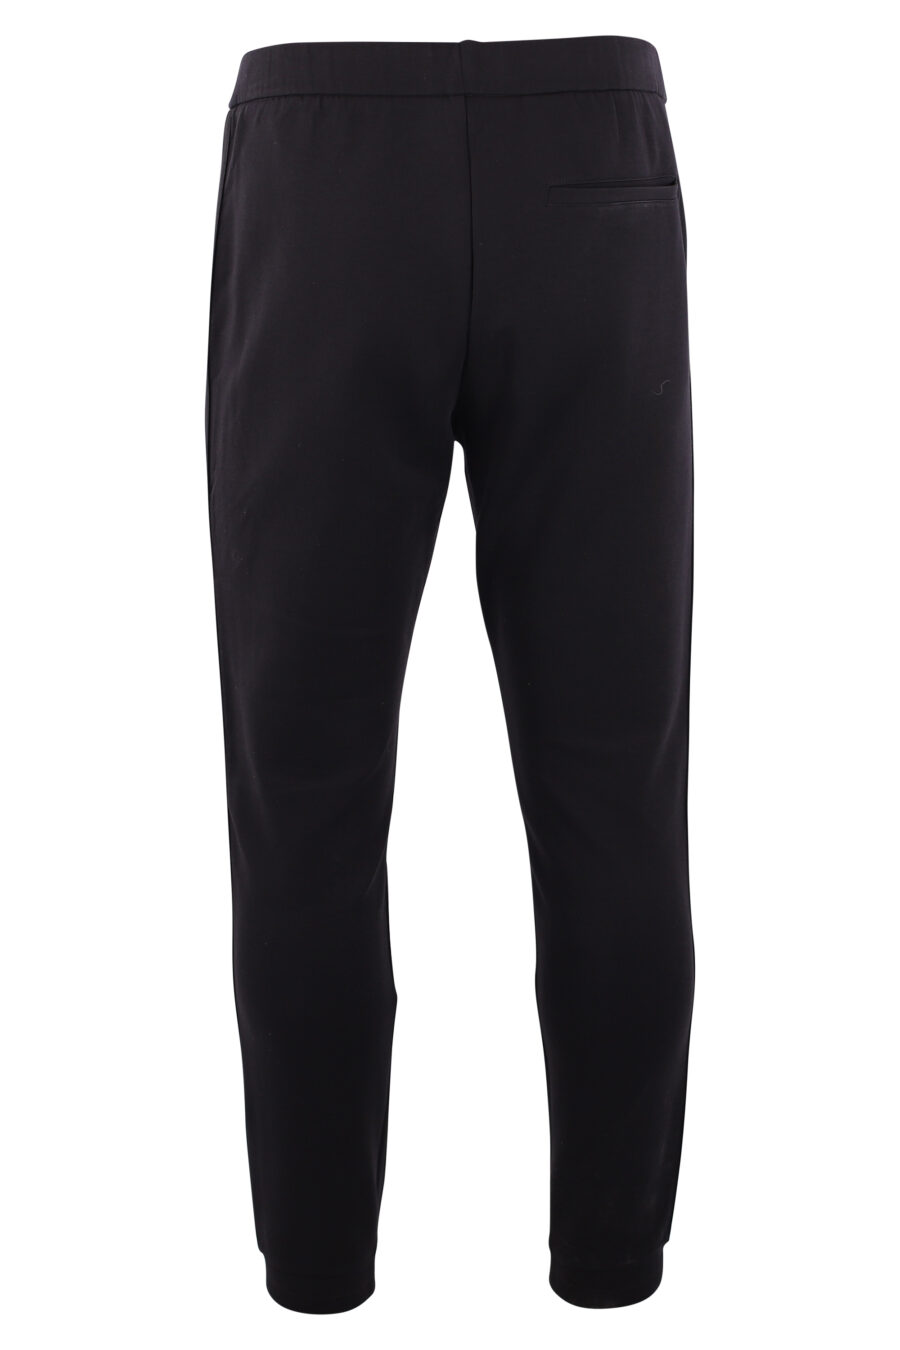 Pantalón de chándal negro con logo vertical lateral - IMG 3171